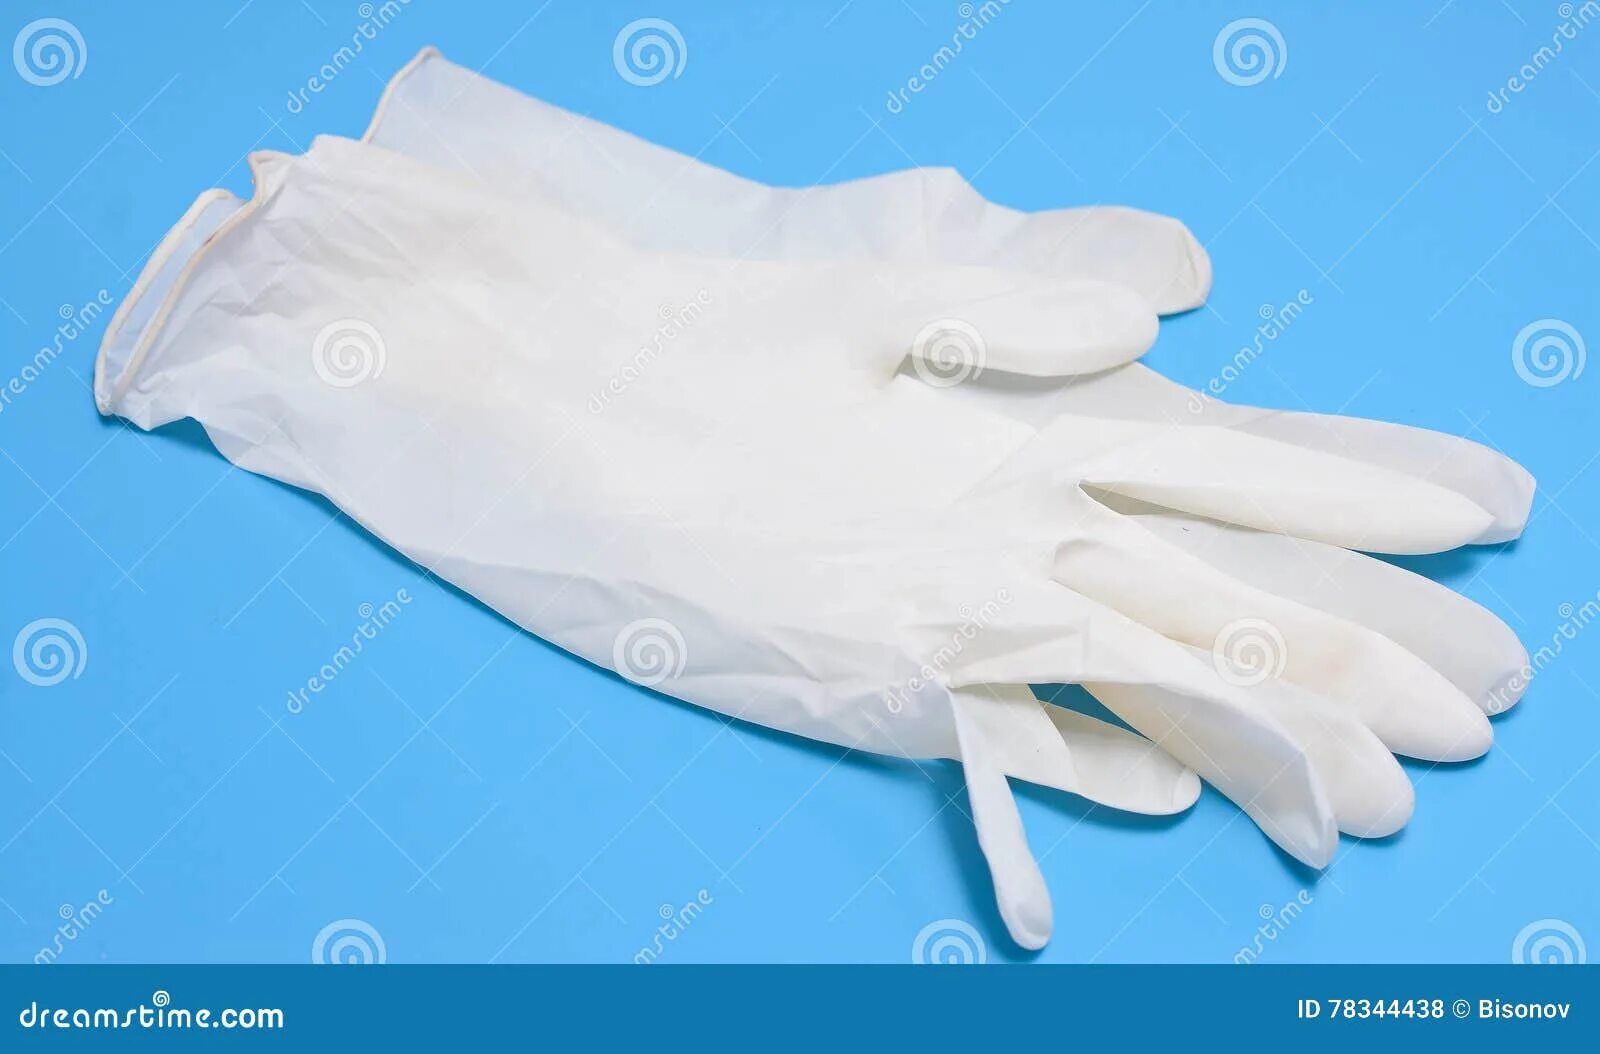 В мешке находится 20 белых перчаток. Перчатки медицинские белые. Медицинские перчатки лежат. Медицинские перчатки на столе. Медицинские перчатки лежат на столе.